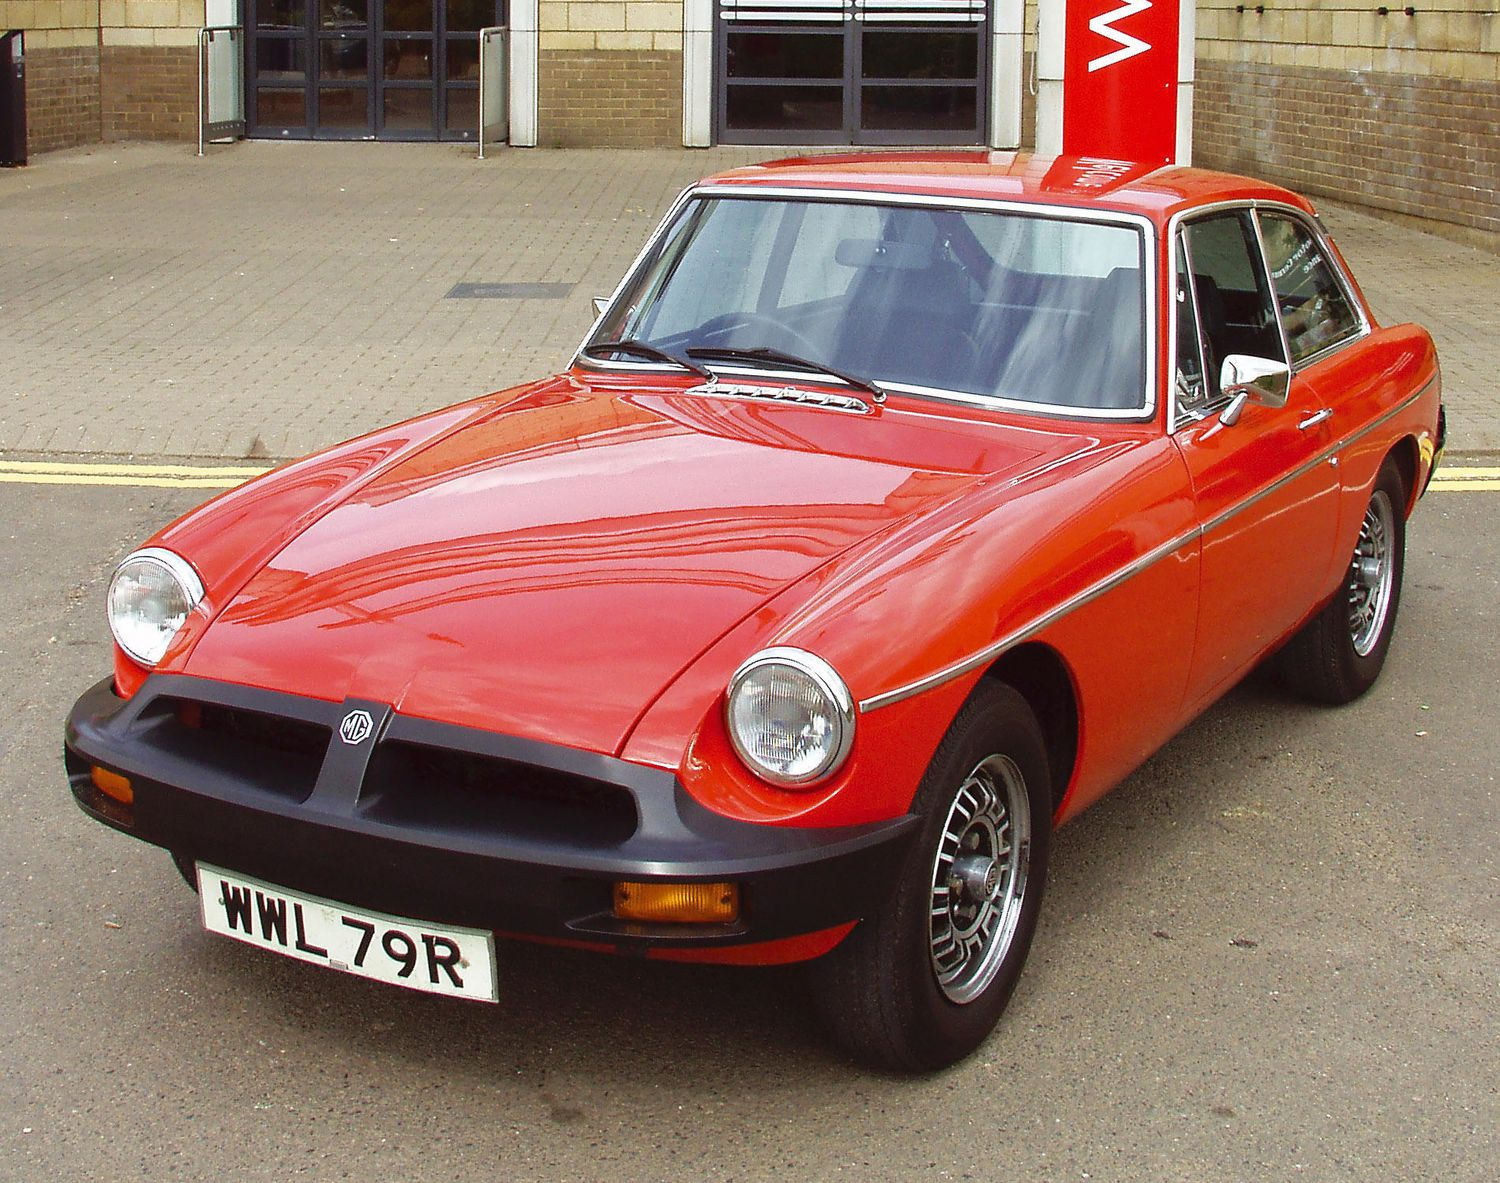 Это купе MG GT V8 семидесятых. Долгое время MG была связана с другой известной английской компанией — Rover, которая также ушла концерну SAIC